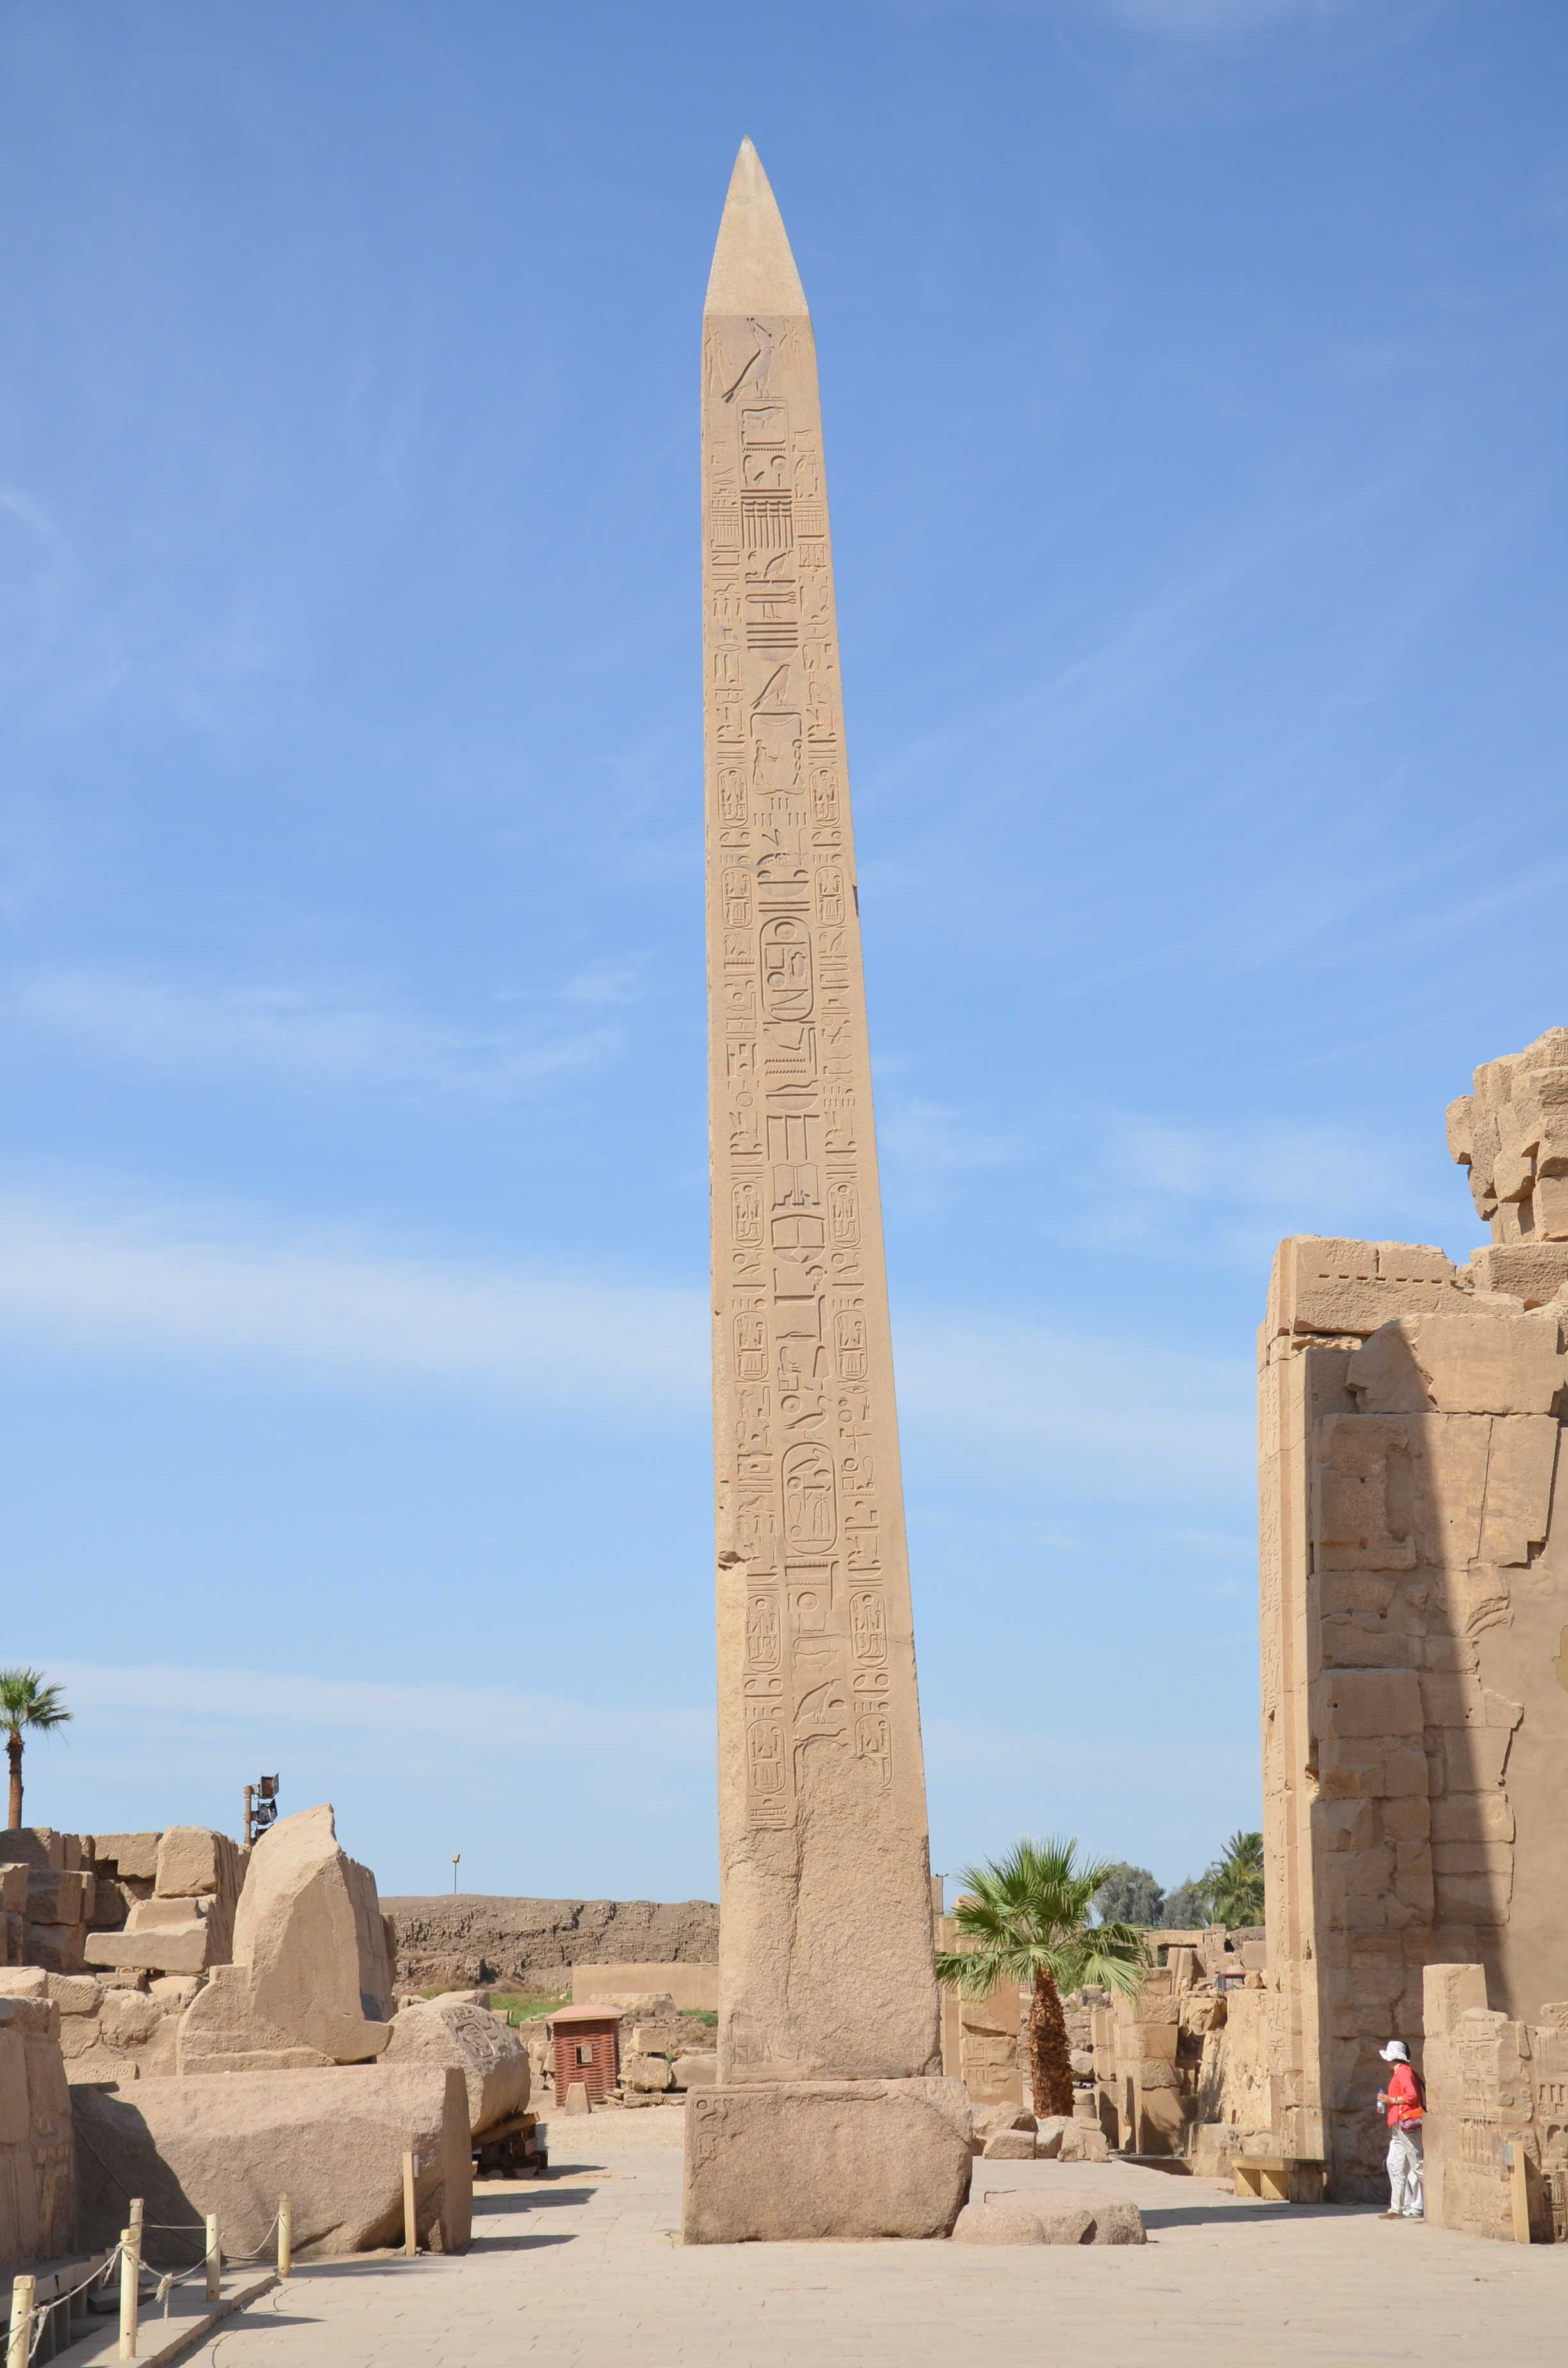 Obelisk at Karnak Temple in Luxor, Egypt